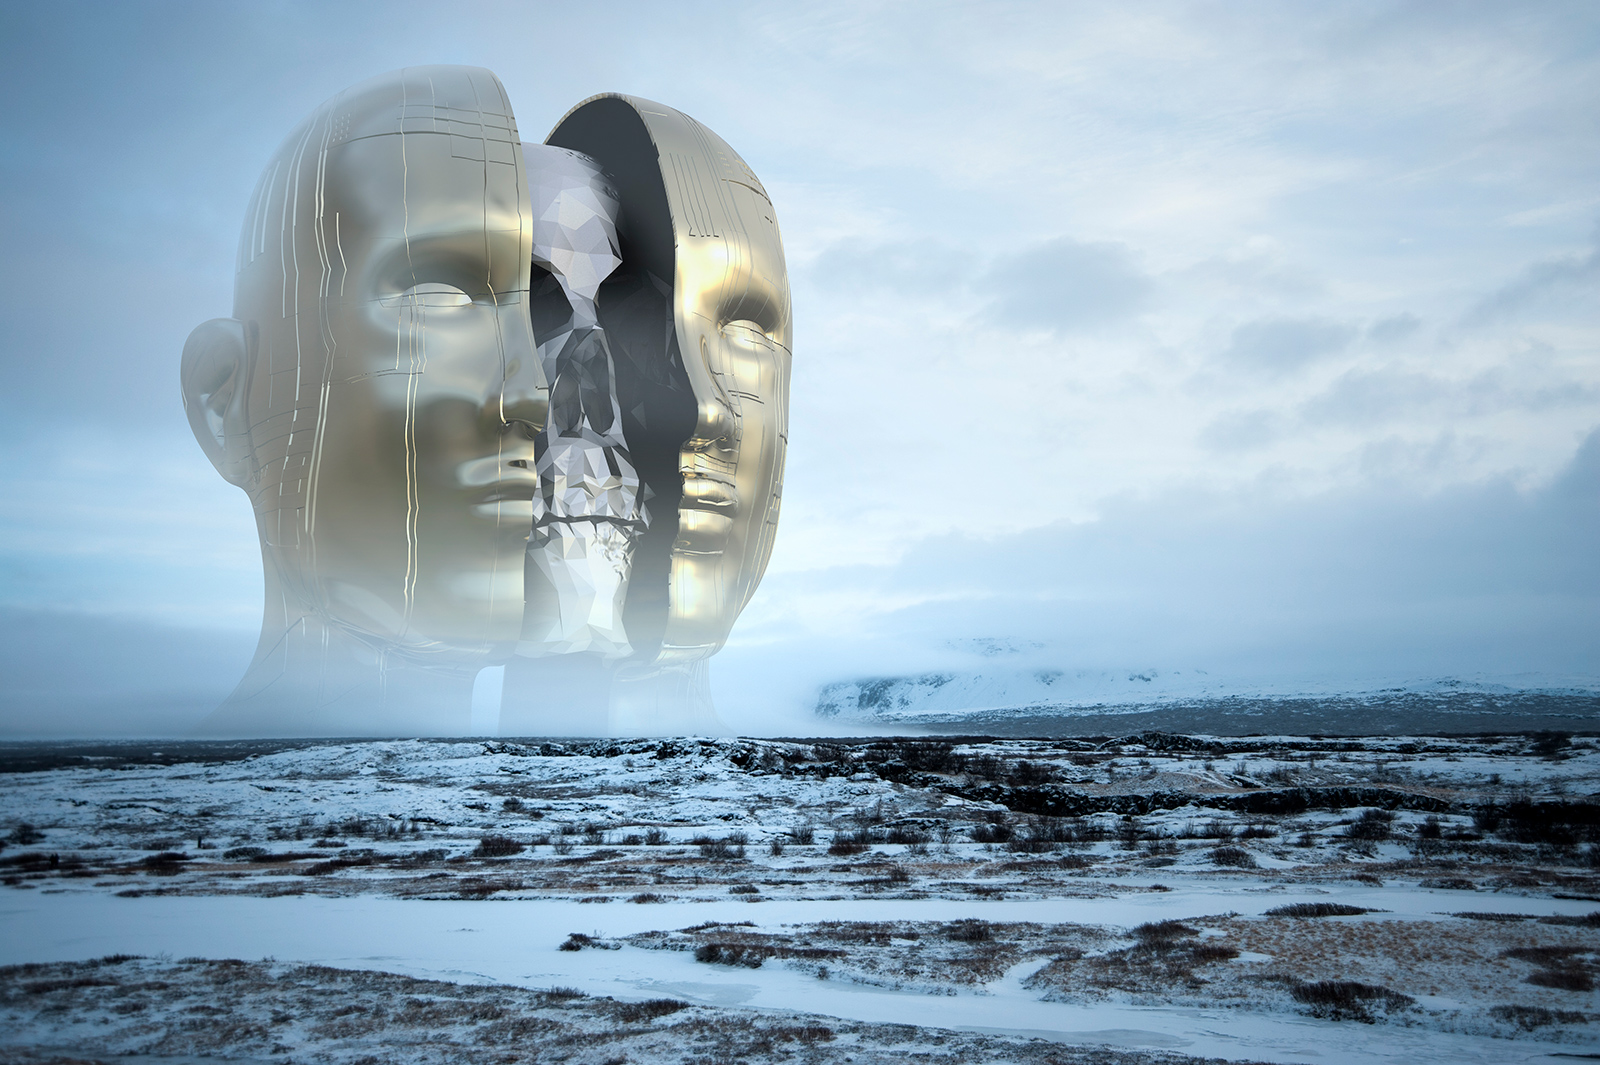 þingvellir, Splitting Time, Surreal Art, Iceland Exploration, Iceland, Lost in Iceland, Cinema 4D, C4D, 3D Render, Daily Render, CGI, Scifi, landscape, Nikon D700, 52 Renders